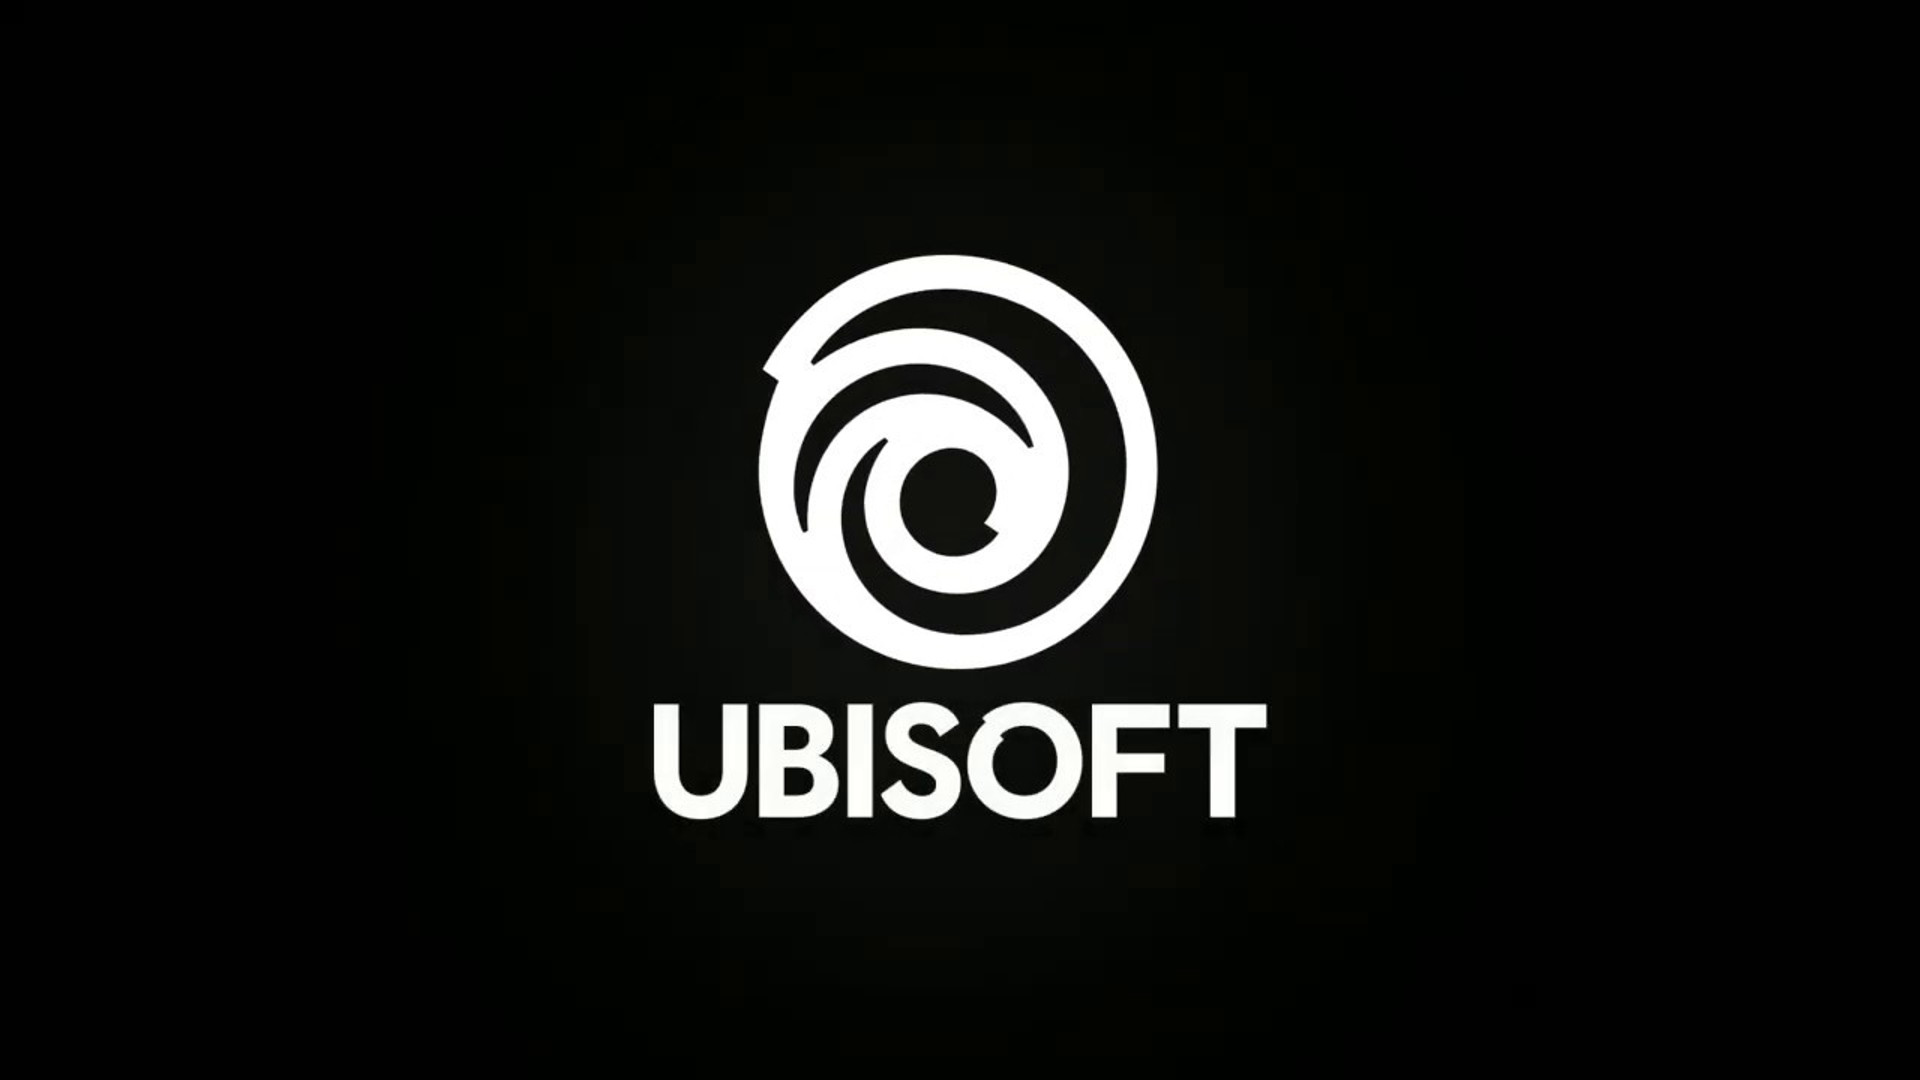 El director de Ubisoft responde a la carta abierta de los empleados y dice que Studio ha "hecho un progreso significativo durante el último año"